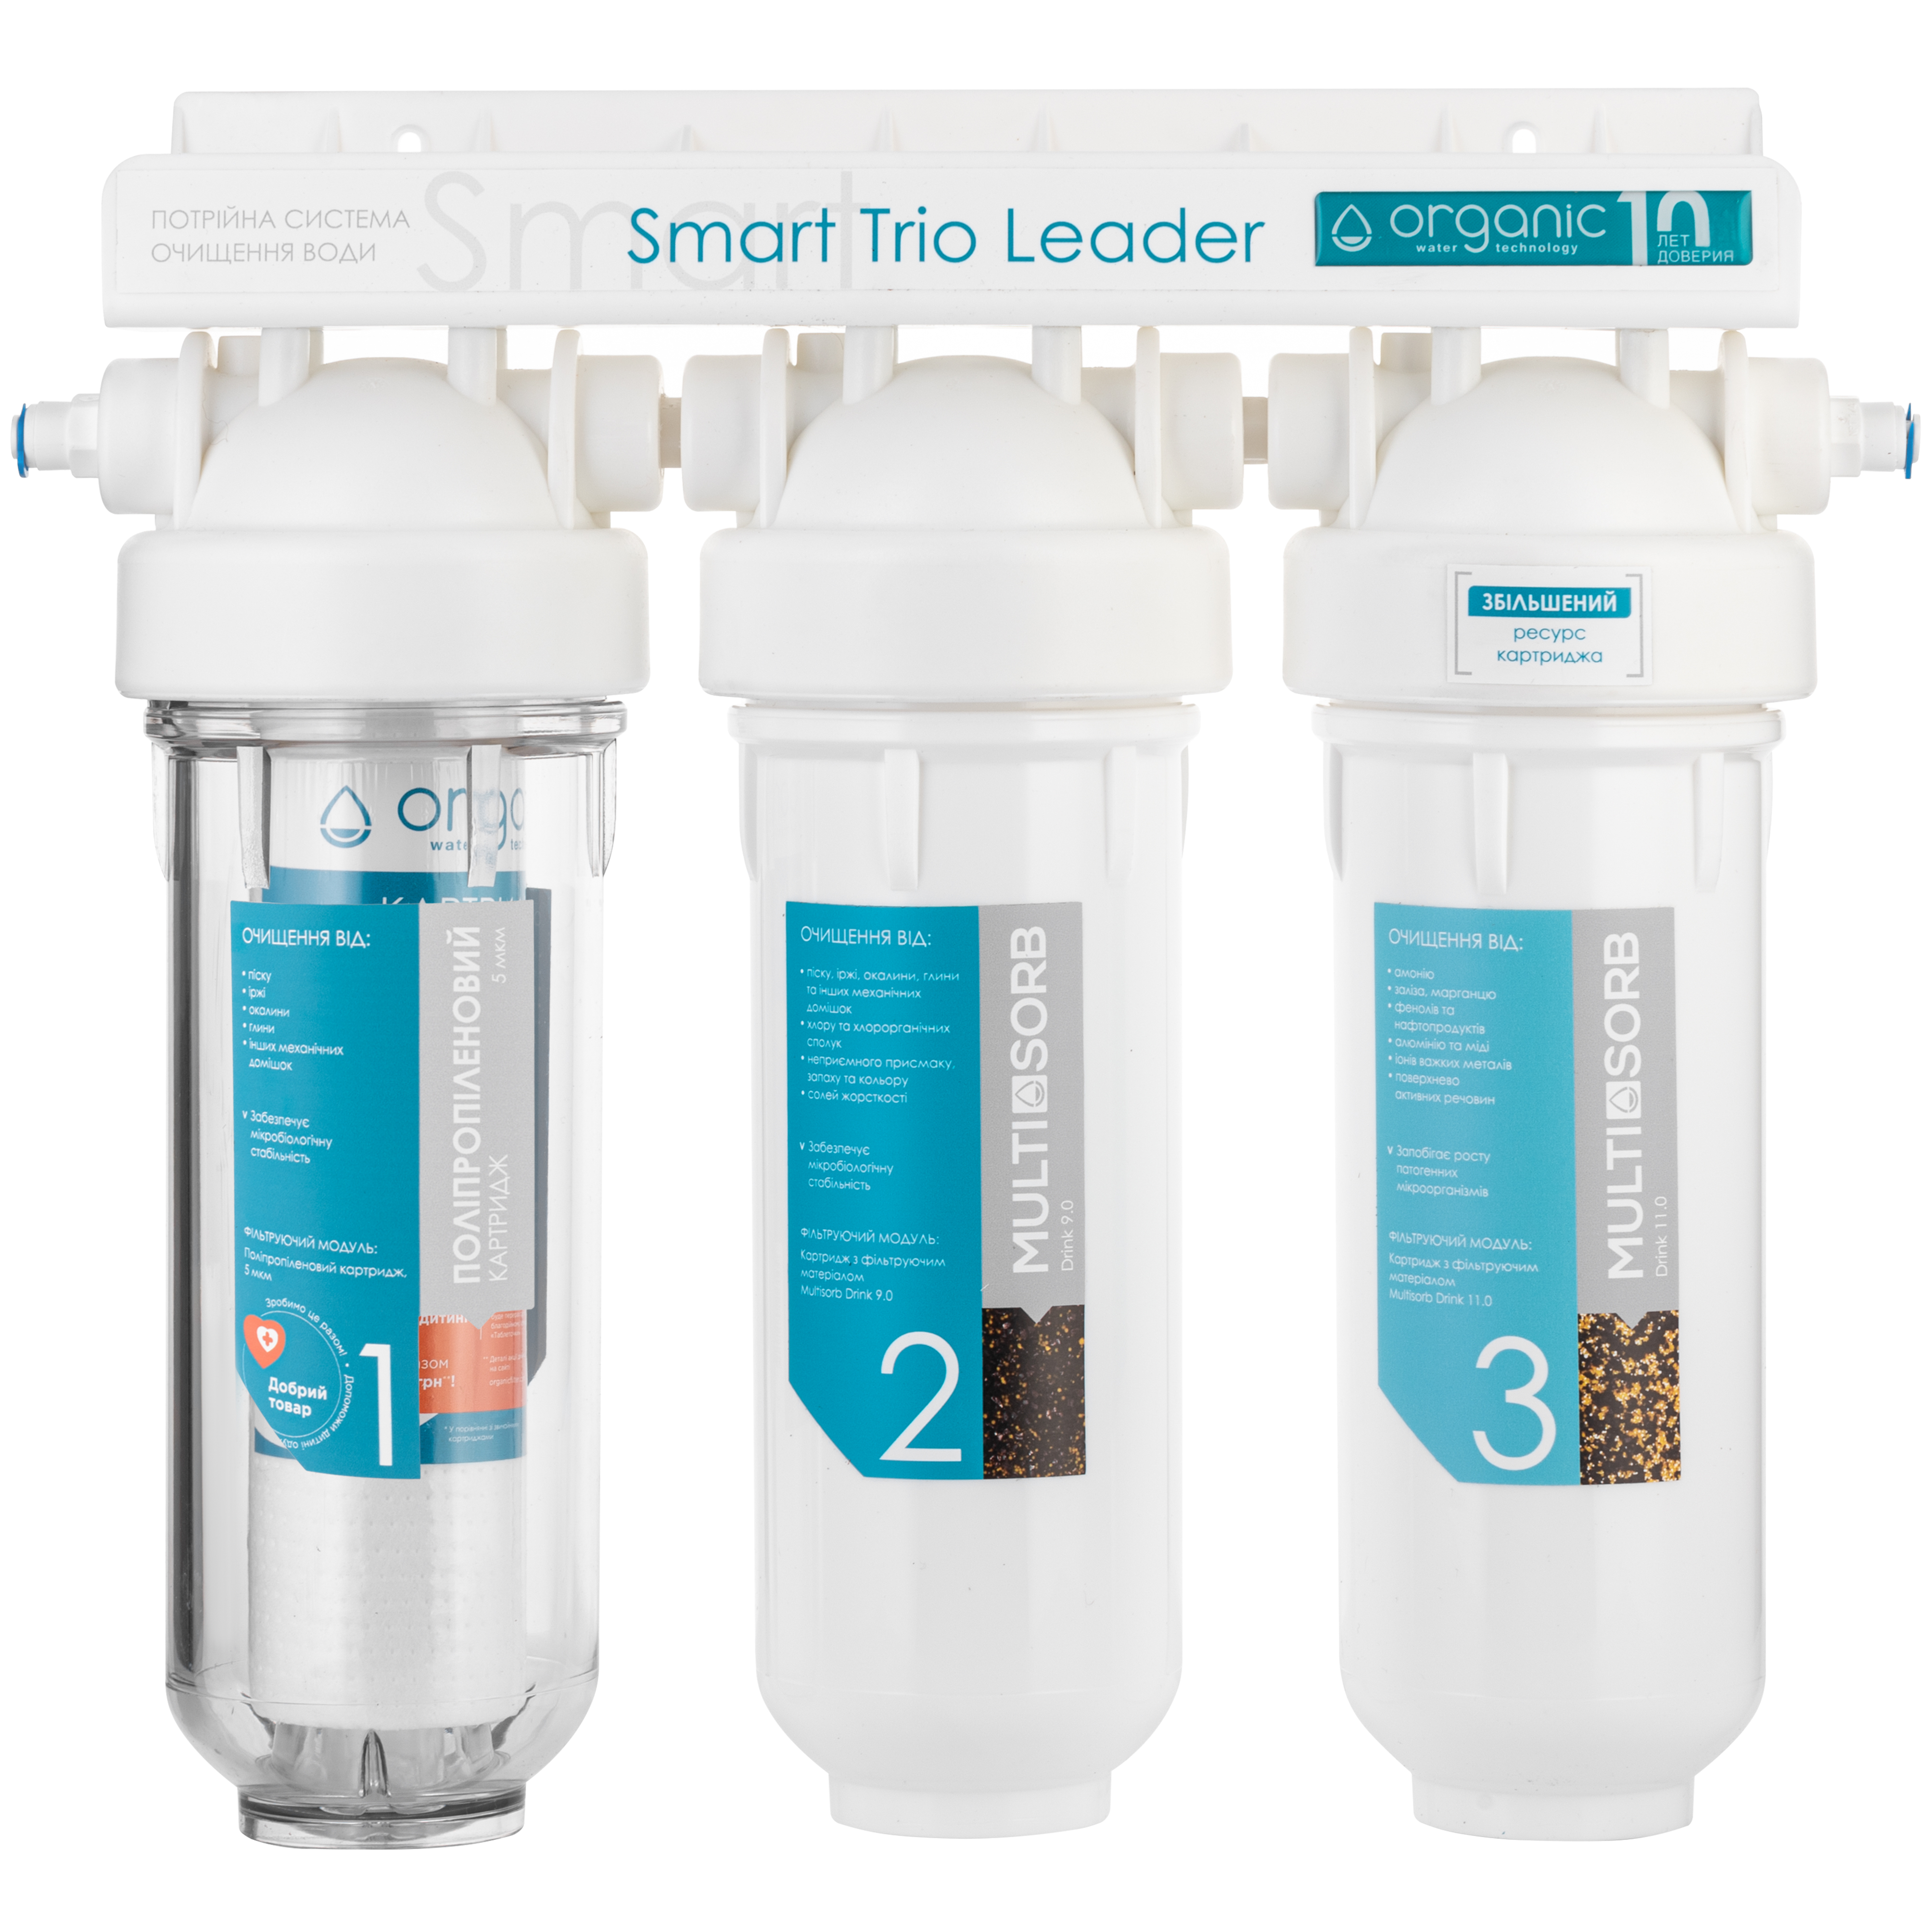 Фильтр для очистки воды в квартире Organic Smart TRIO LEADER